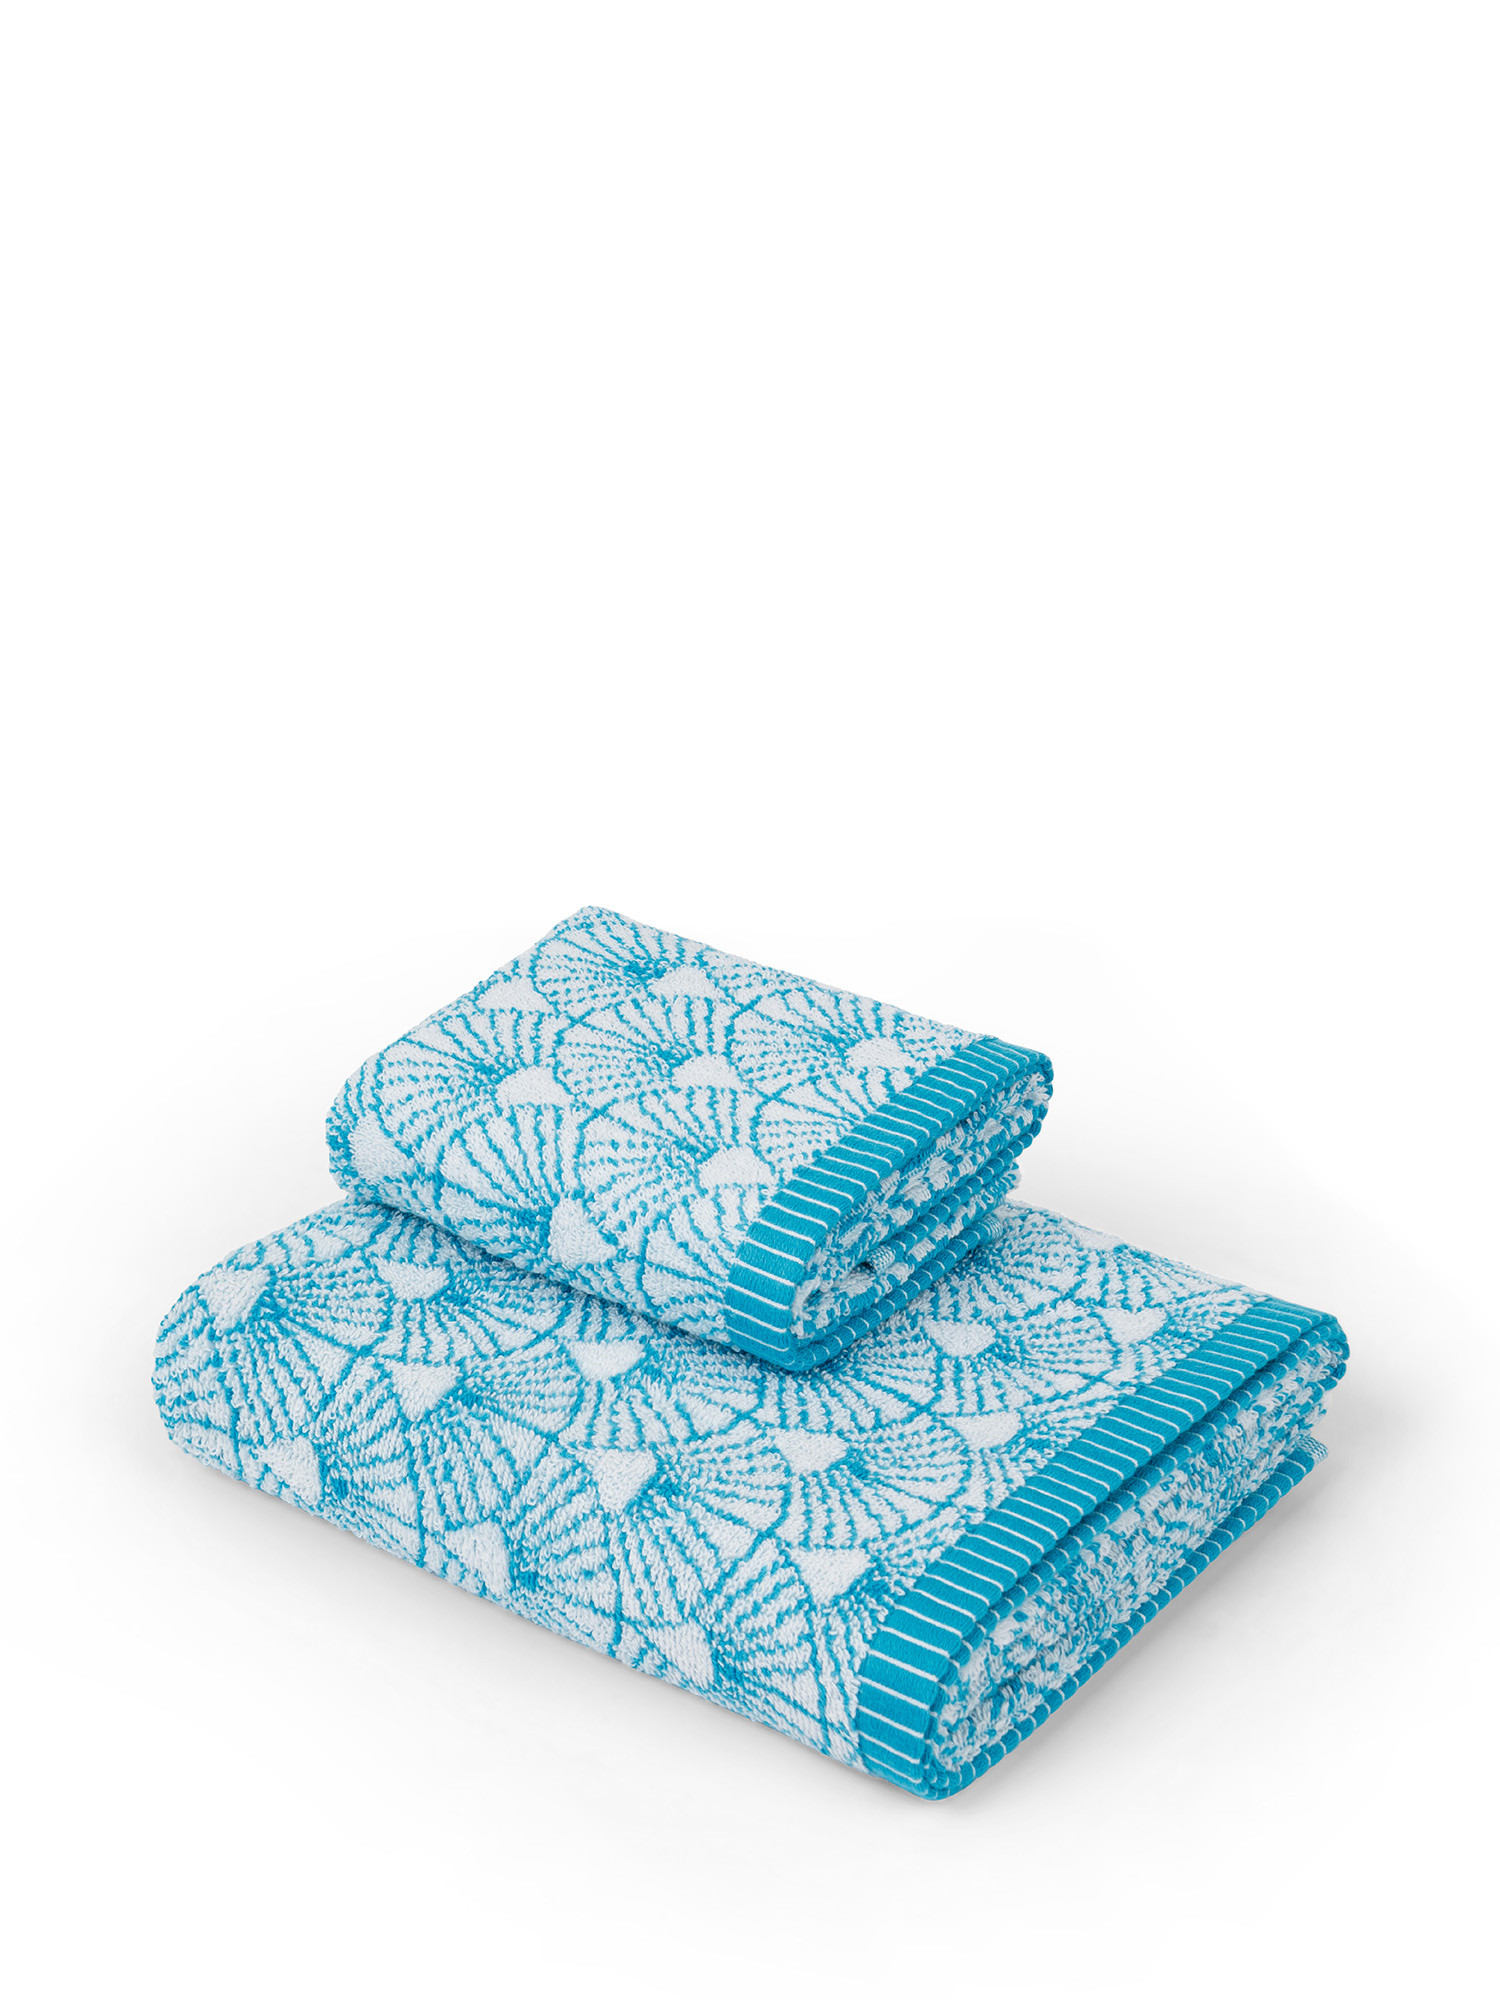 Asciugamano spugna di cotone motivo ventagli, Azzurro, large image number 0